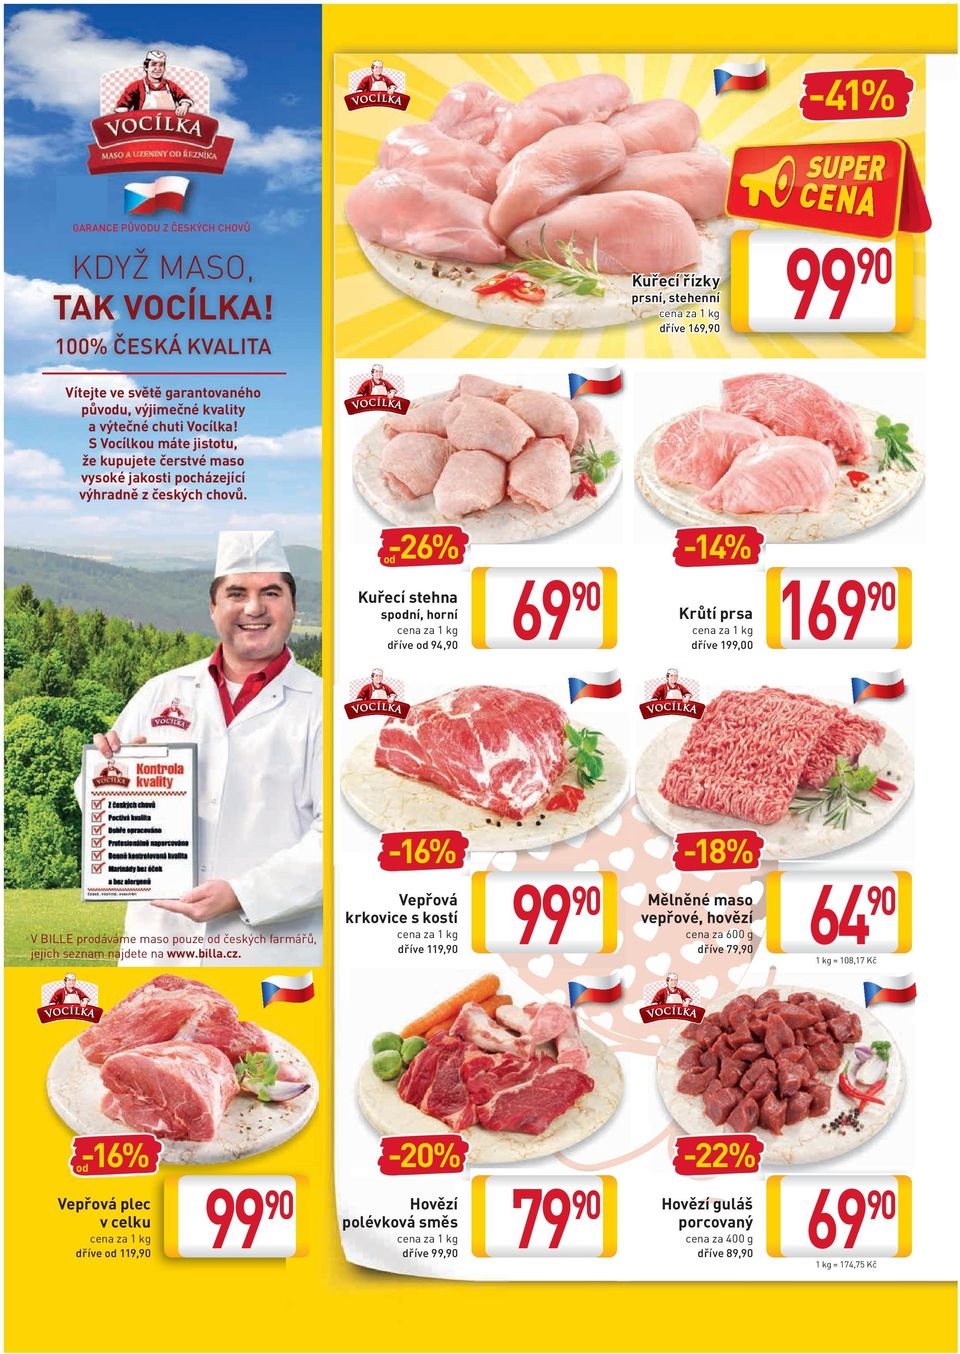 S Vocílkou máte jistotu, že kupujete čerstvé maso vysoké jakosti pocházející výhradně z českých chovů.